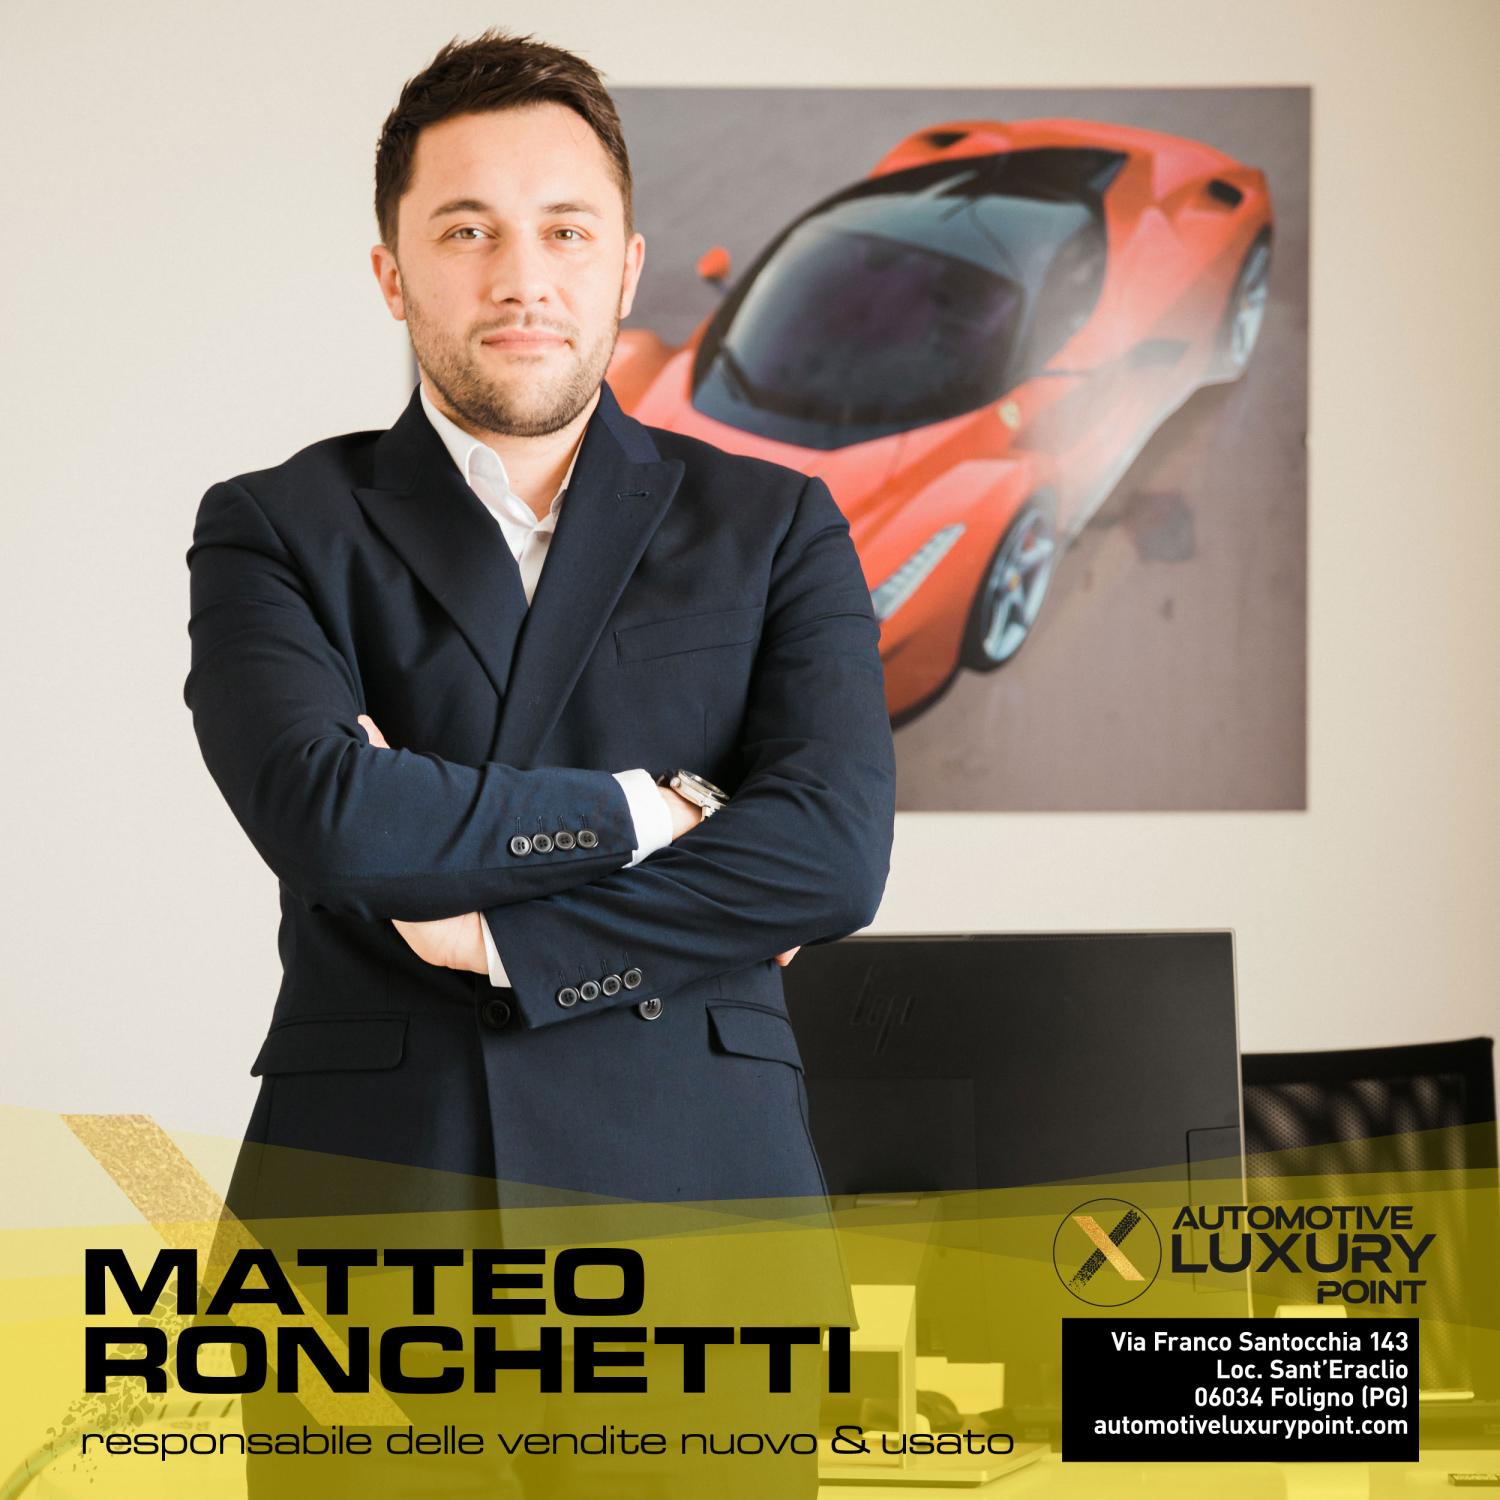 Matteo Ronchetti